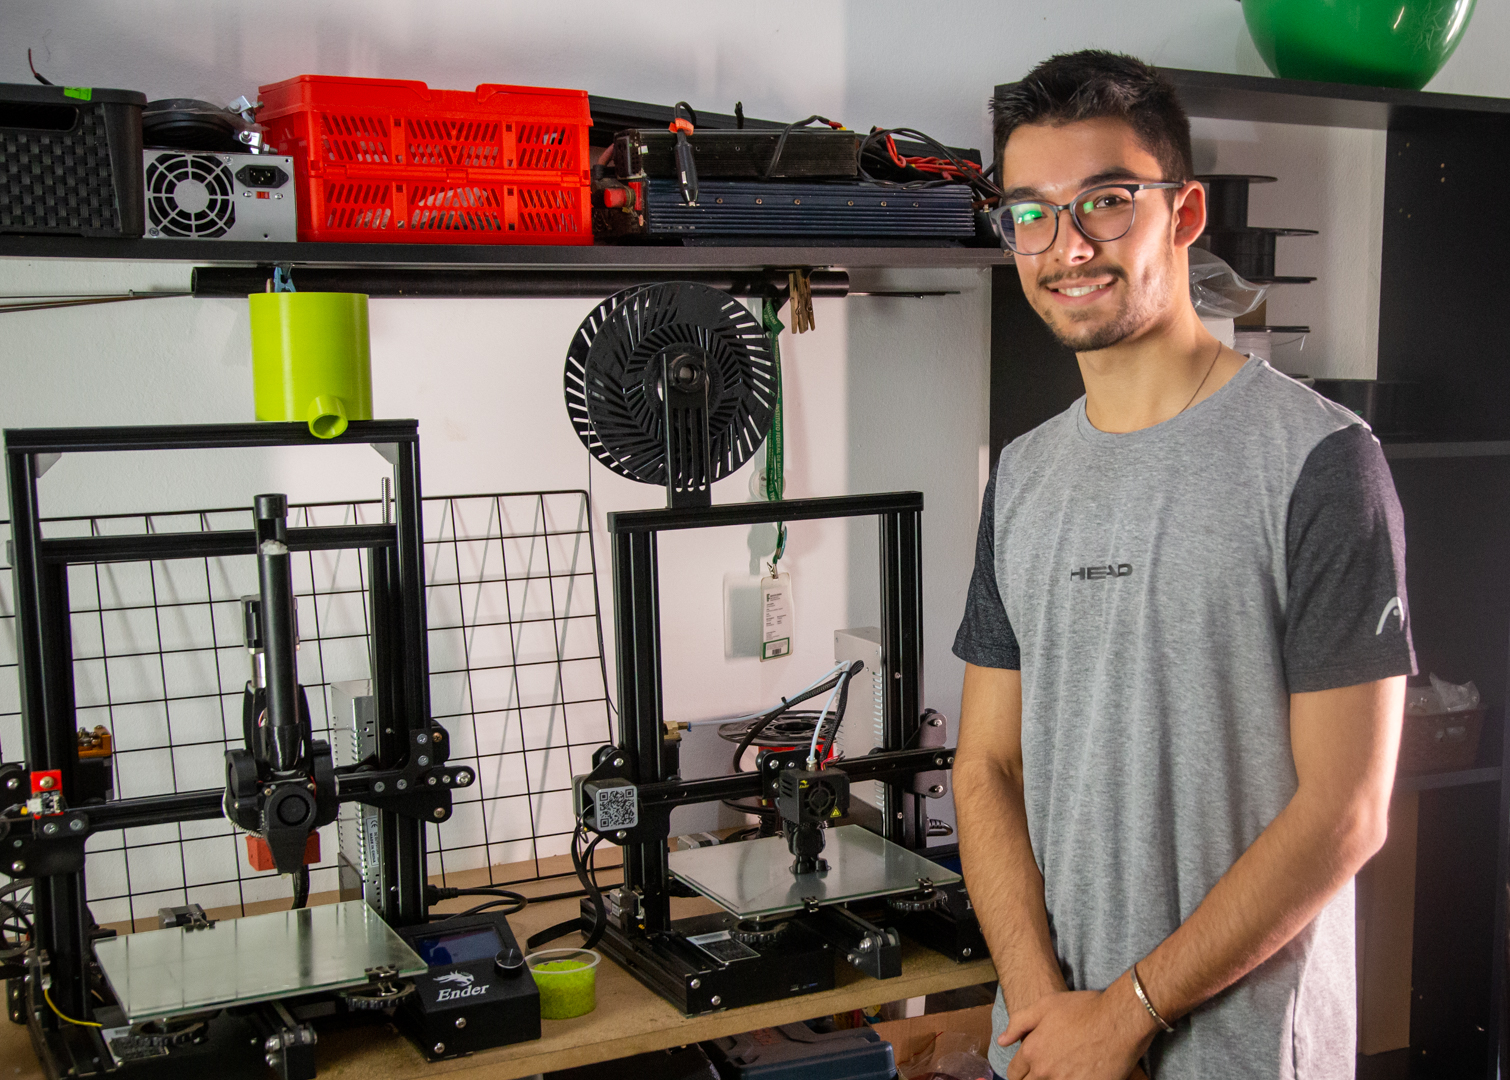 fundect recicle 3d 1 Com apoio da Fundect, startup de Campo Grande inova com impressão 3D sustentável